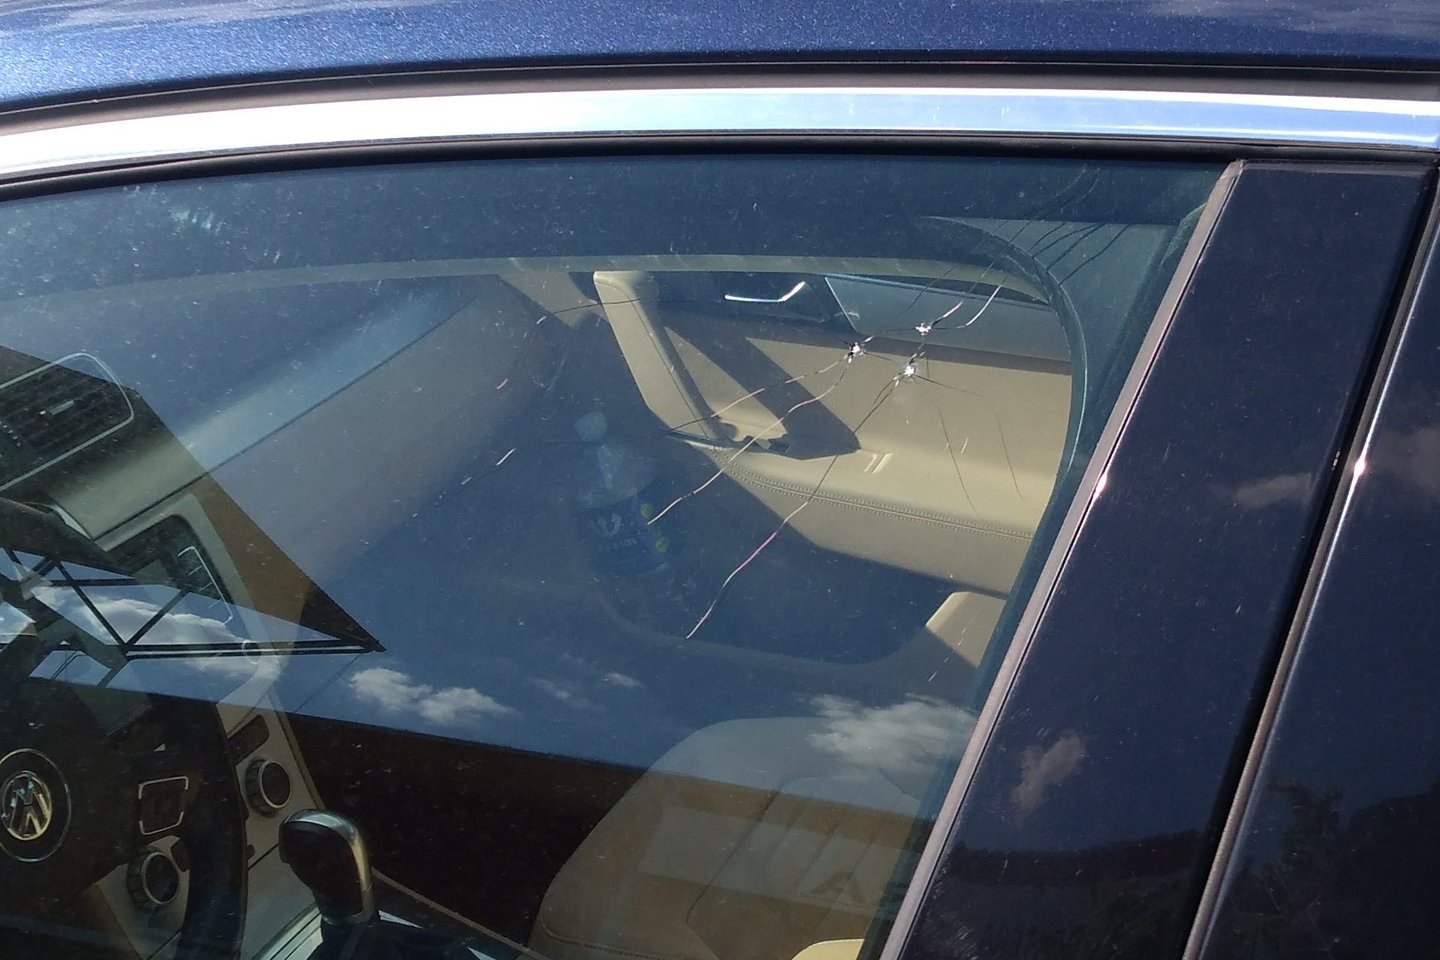  Ričardas ant automobilio stiklo rado tris daužimo žymes.<br> Lrytas.lt skaitytojo nuotr.